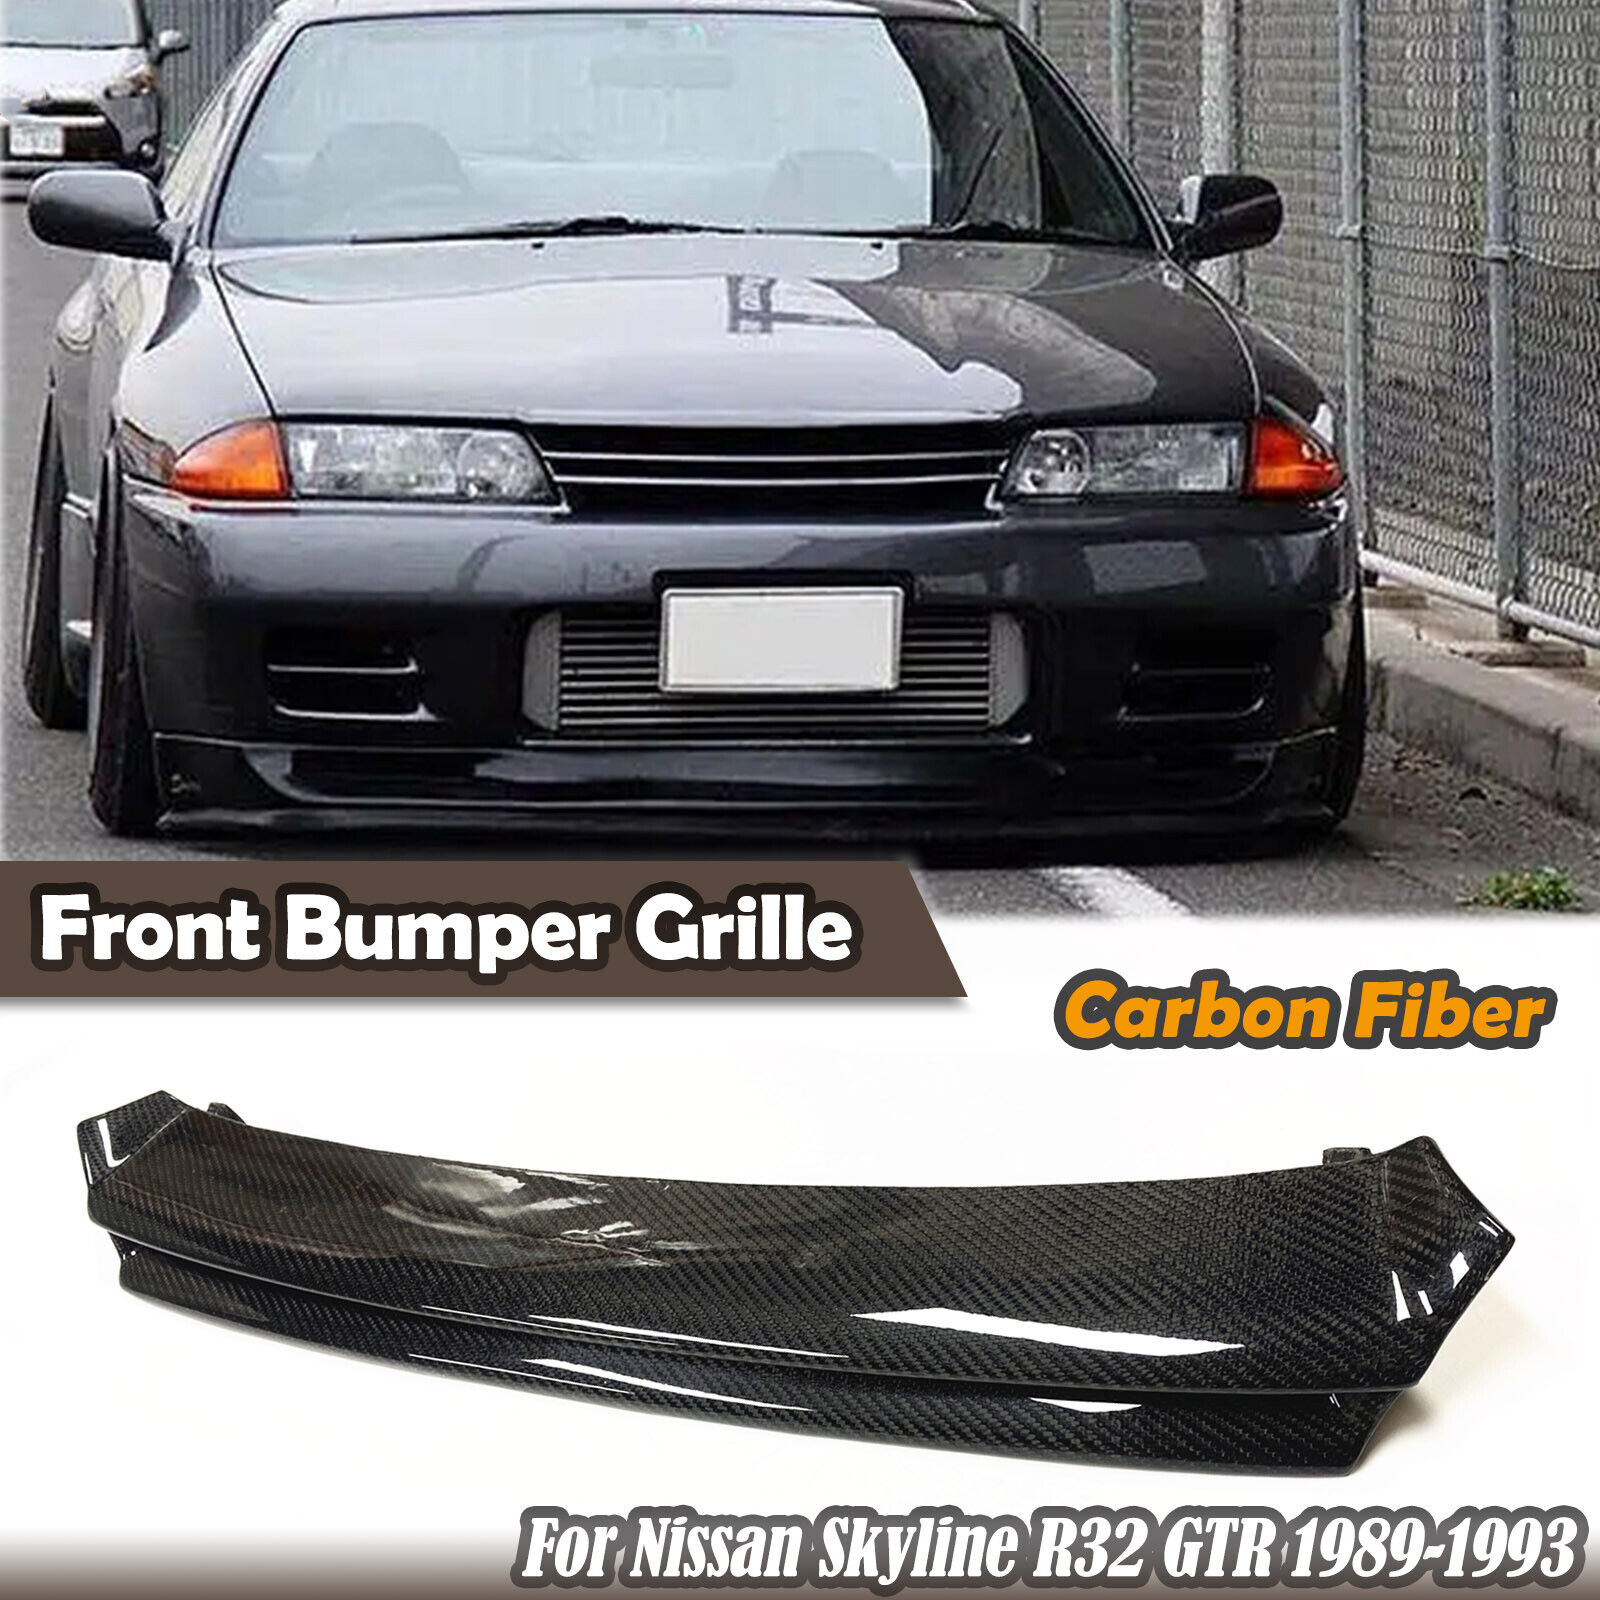 For Nissan Skyline R32 GTR 1989-1993 Carbon Fiber Front Bumper Grill Grille Kit